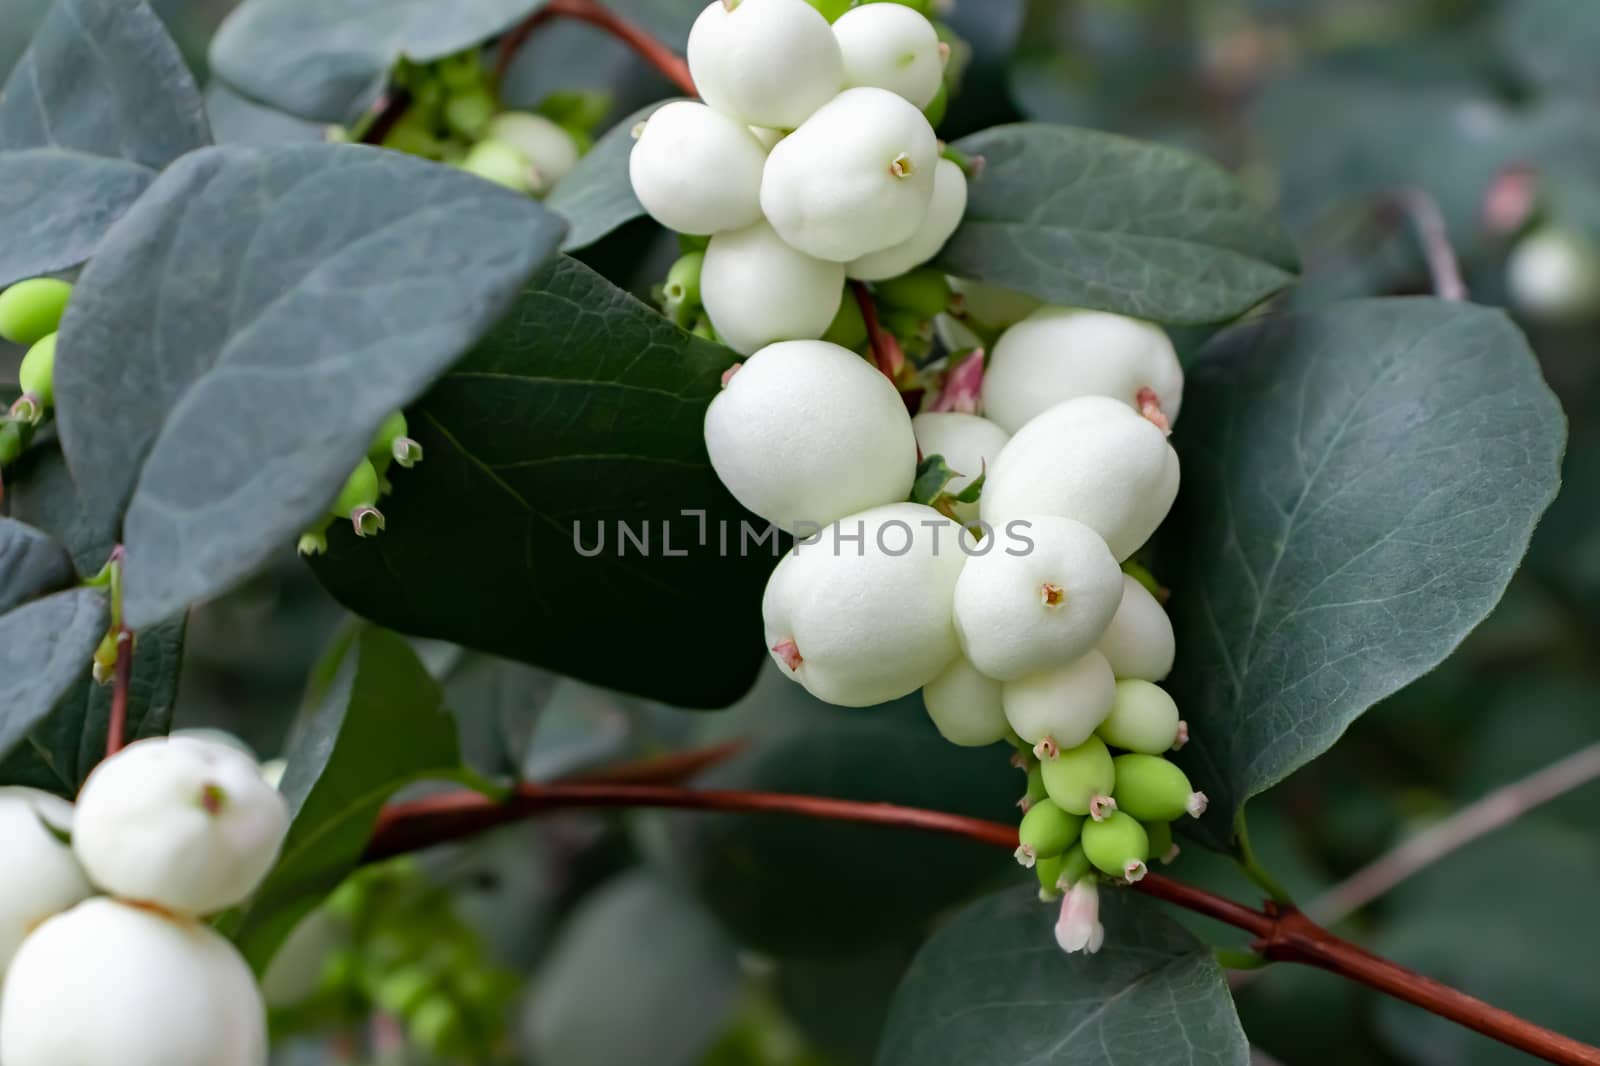 White berries of Symphoricarpos albus known as common snowberry on a bush.